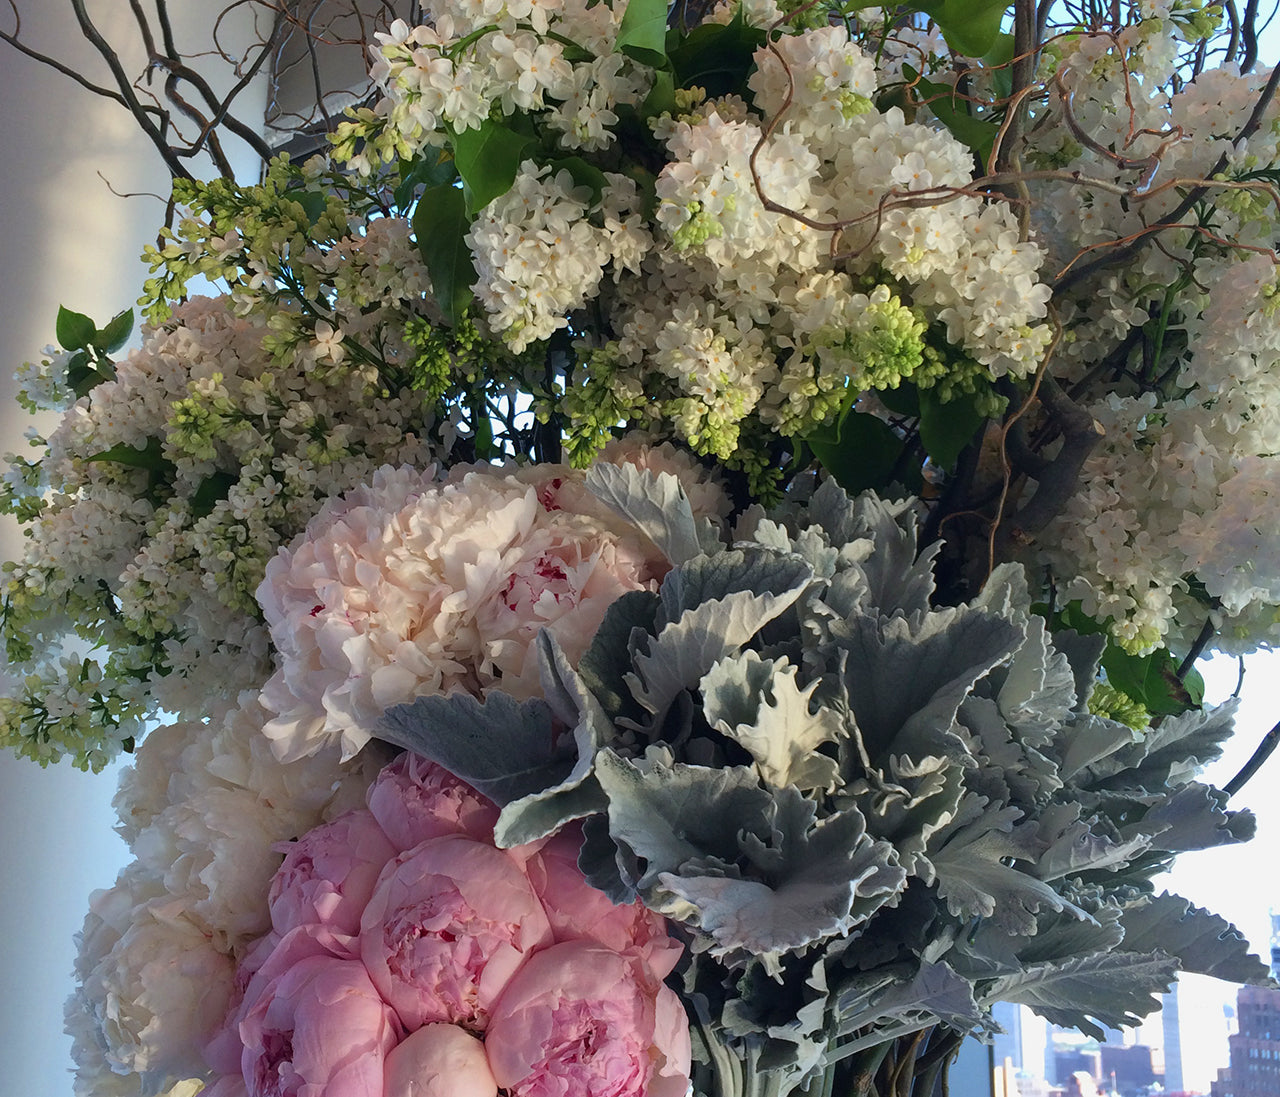 Wedding arrangements - Bloom flowers